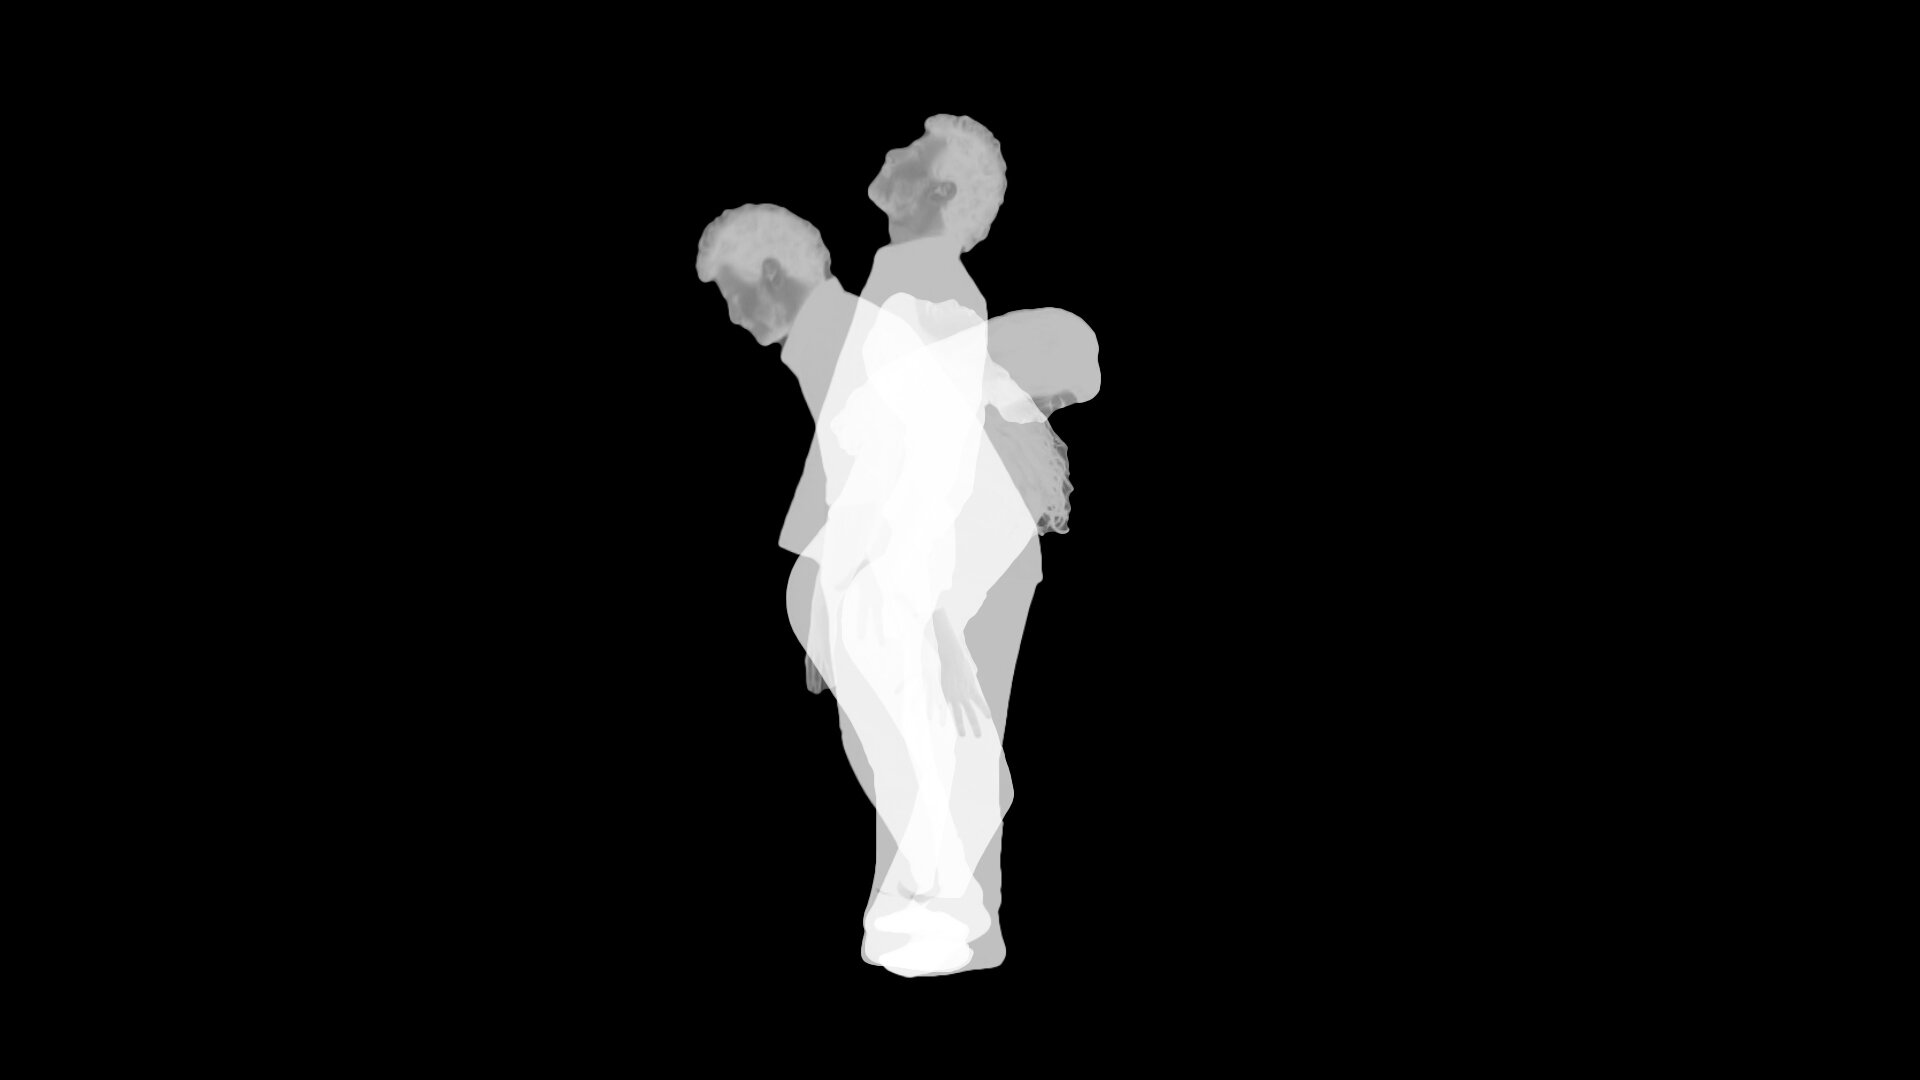 מוביוס אוביוס, פריים מתוך הוידאו "מוביוס אוביוס", 2020 מוביוס אוביוס, פריים מתוך הוידאו "מוביוס אוביוס", 2020